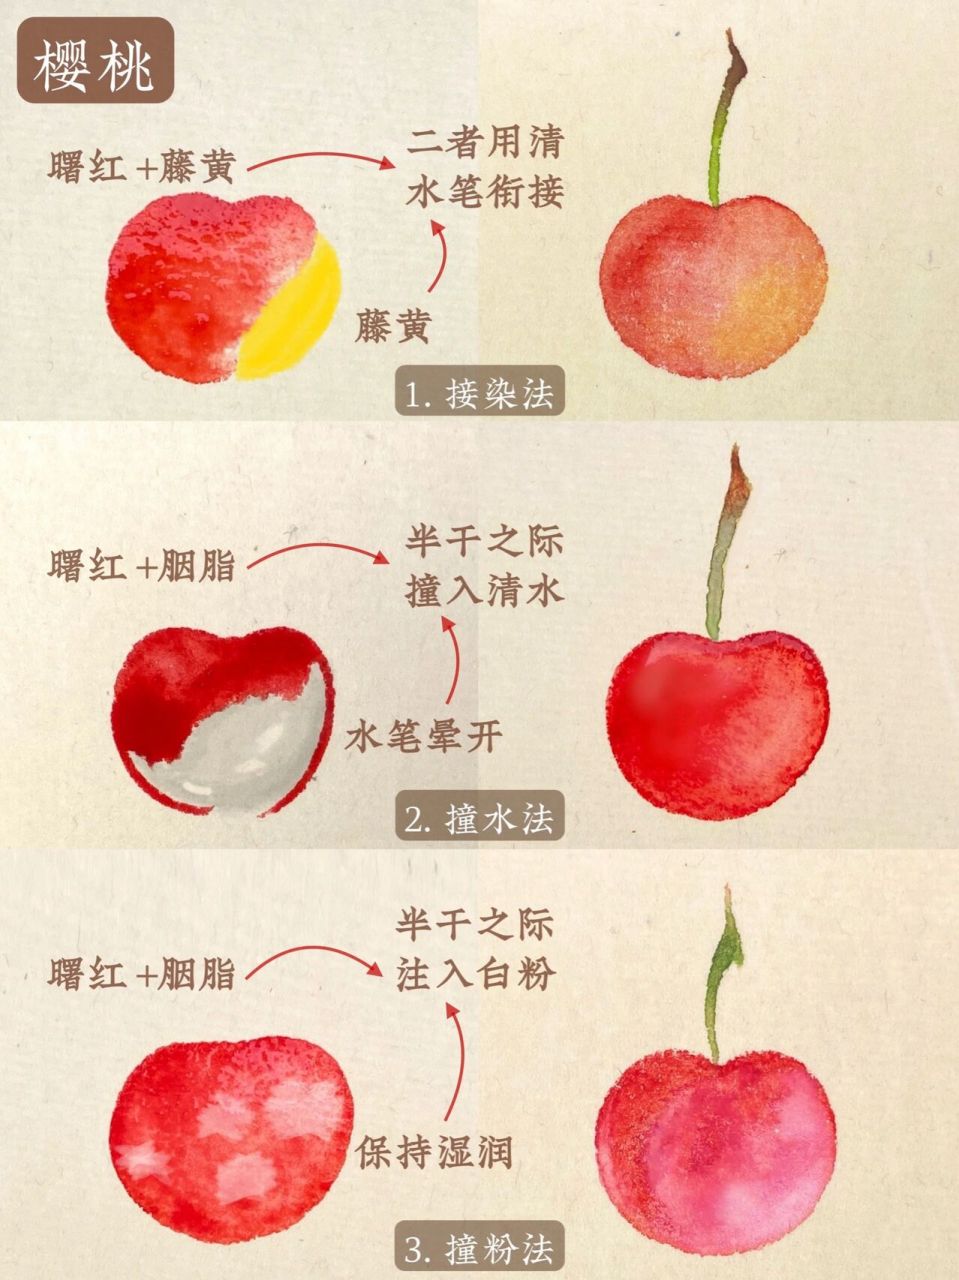 三种必学画法97超好 98夏天到了,那么今天就来分享一下樱桃的画法